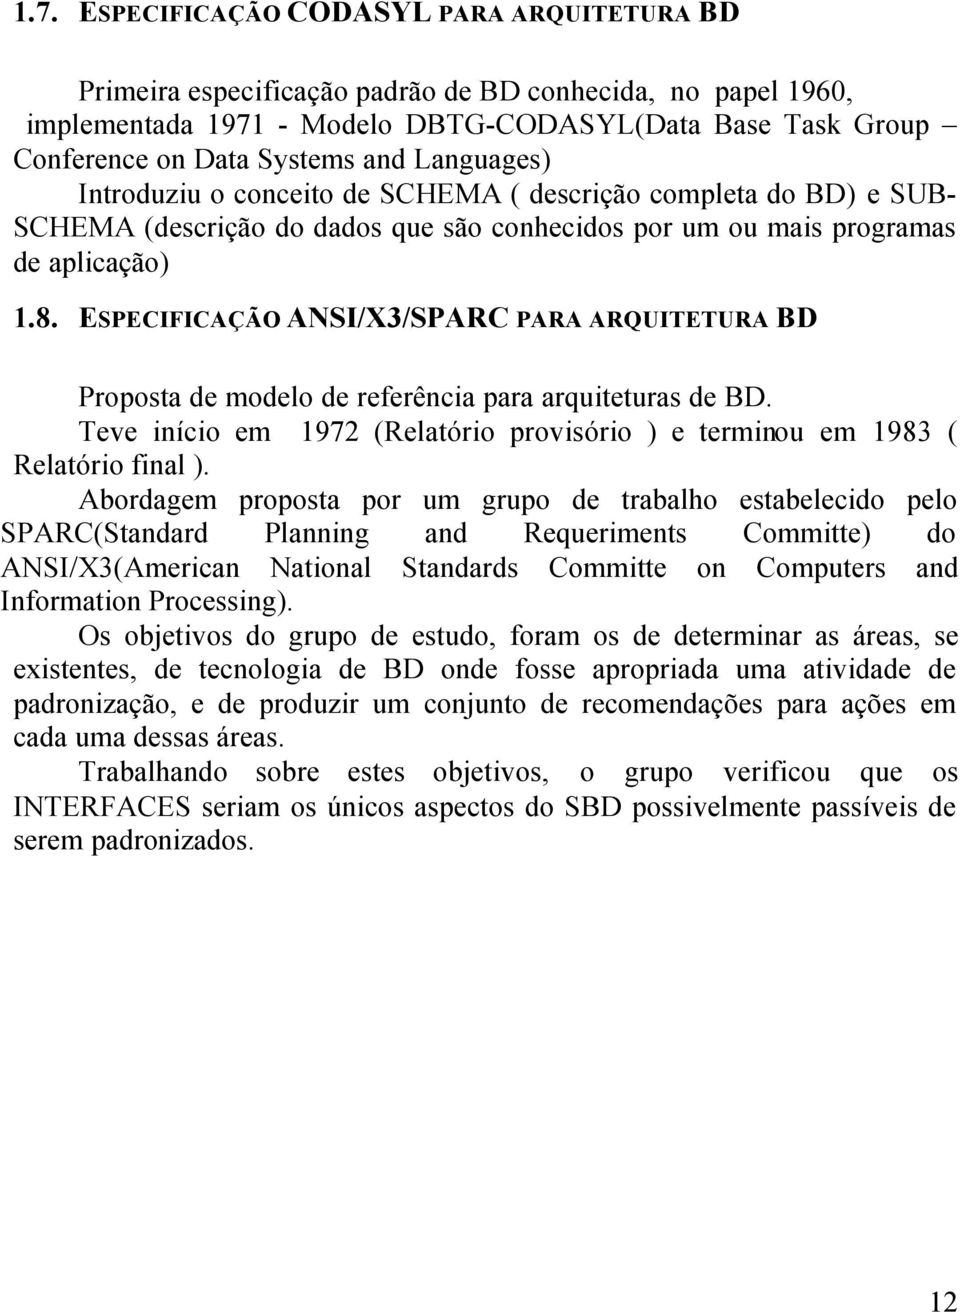 ESPECIFICAÇÃO ANSI/X3/SPARC PARA ARQUITETURA BD Proposta de modelo de referência para arquiteturas de BD. Teve início em 1972 (Relatório provisório ) e terminou em 1983 ( Relatório final ).